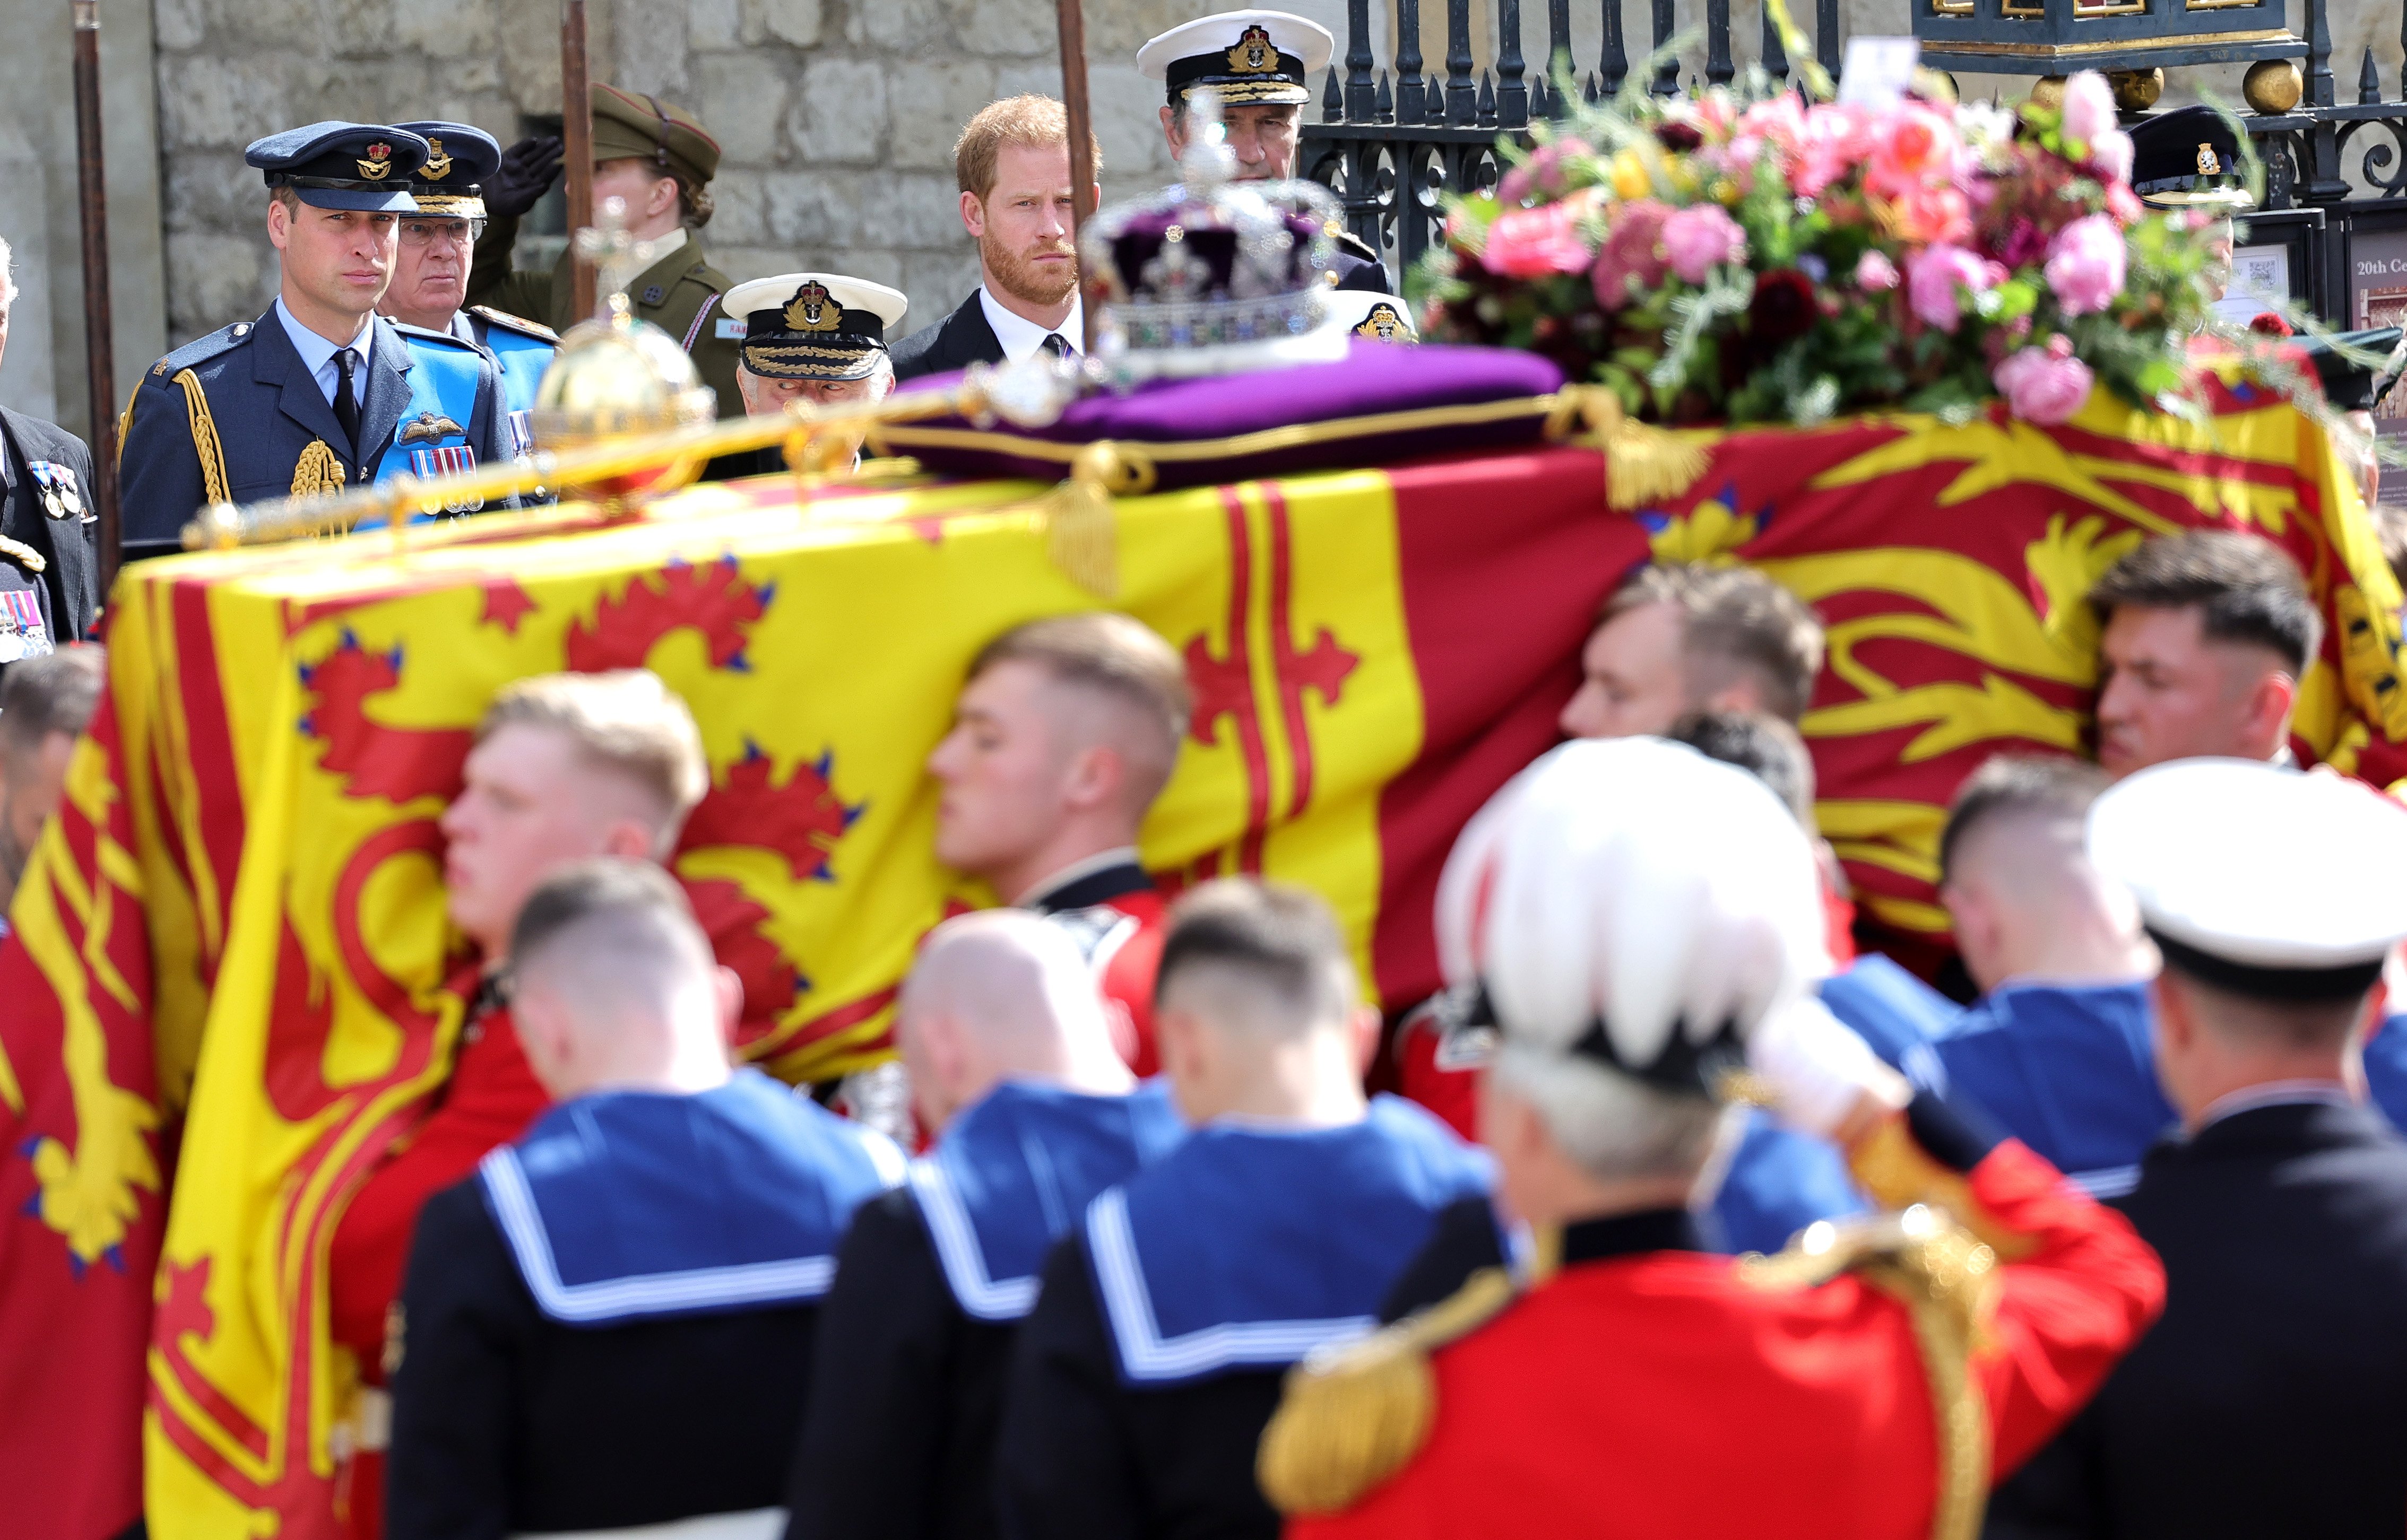 El príncipe William, príncipe de Gales, el rey Charles III y el príncipe Harry, duque de Sussex, observando el ataúd de la reina Elizabeth II durante su funeral de estado en la Abadía de Westminster, el 19 de septiembre de 2022 en Londres, Inglaterra. | Foto: Getty Images